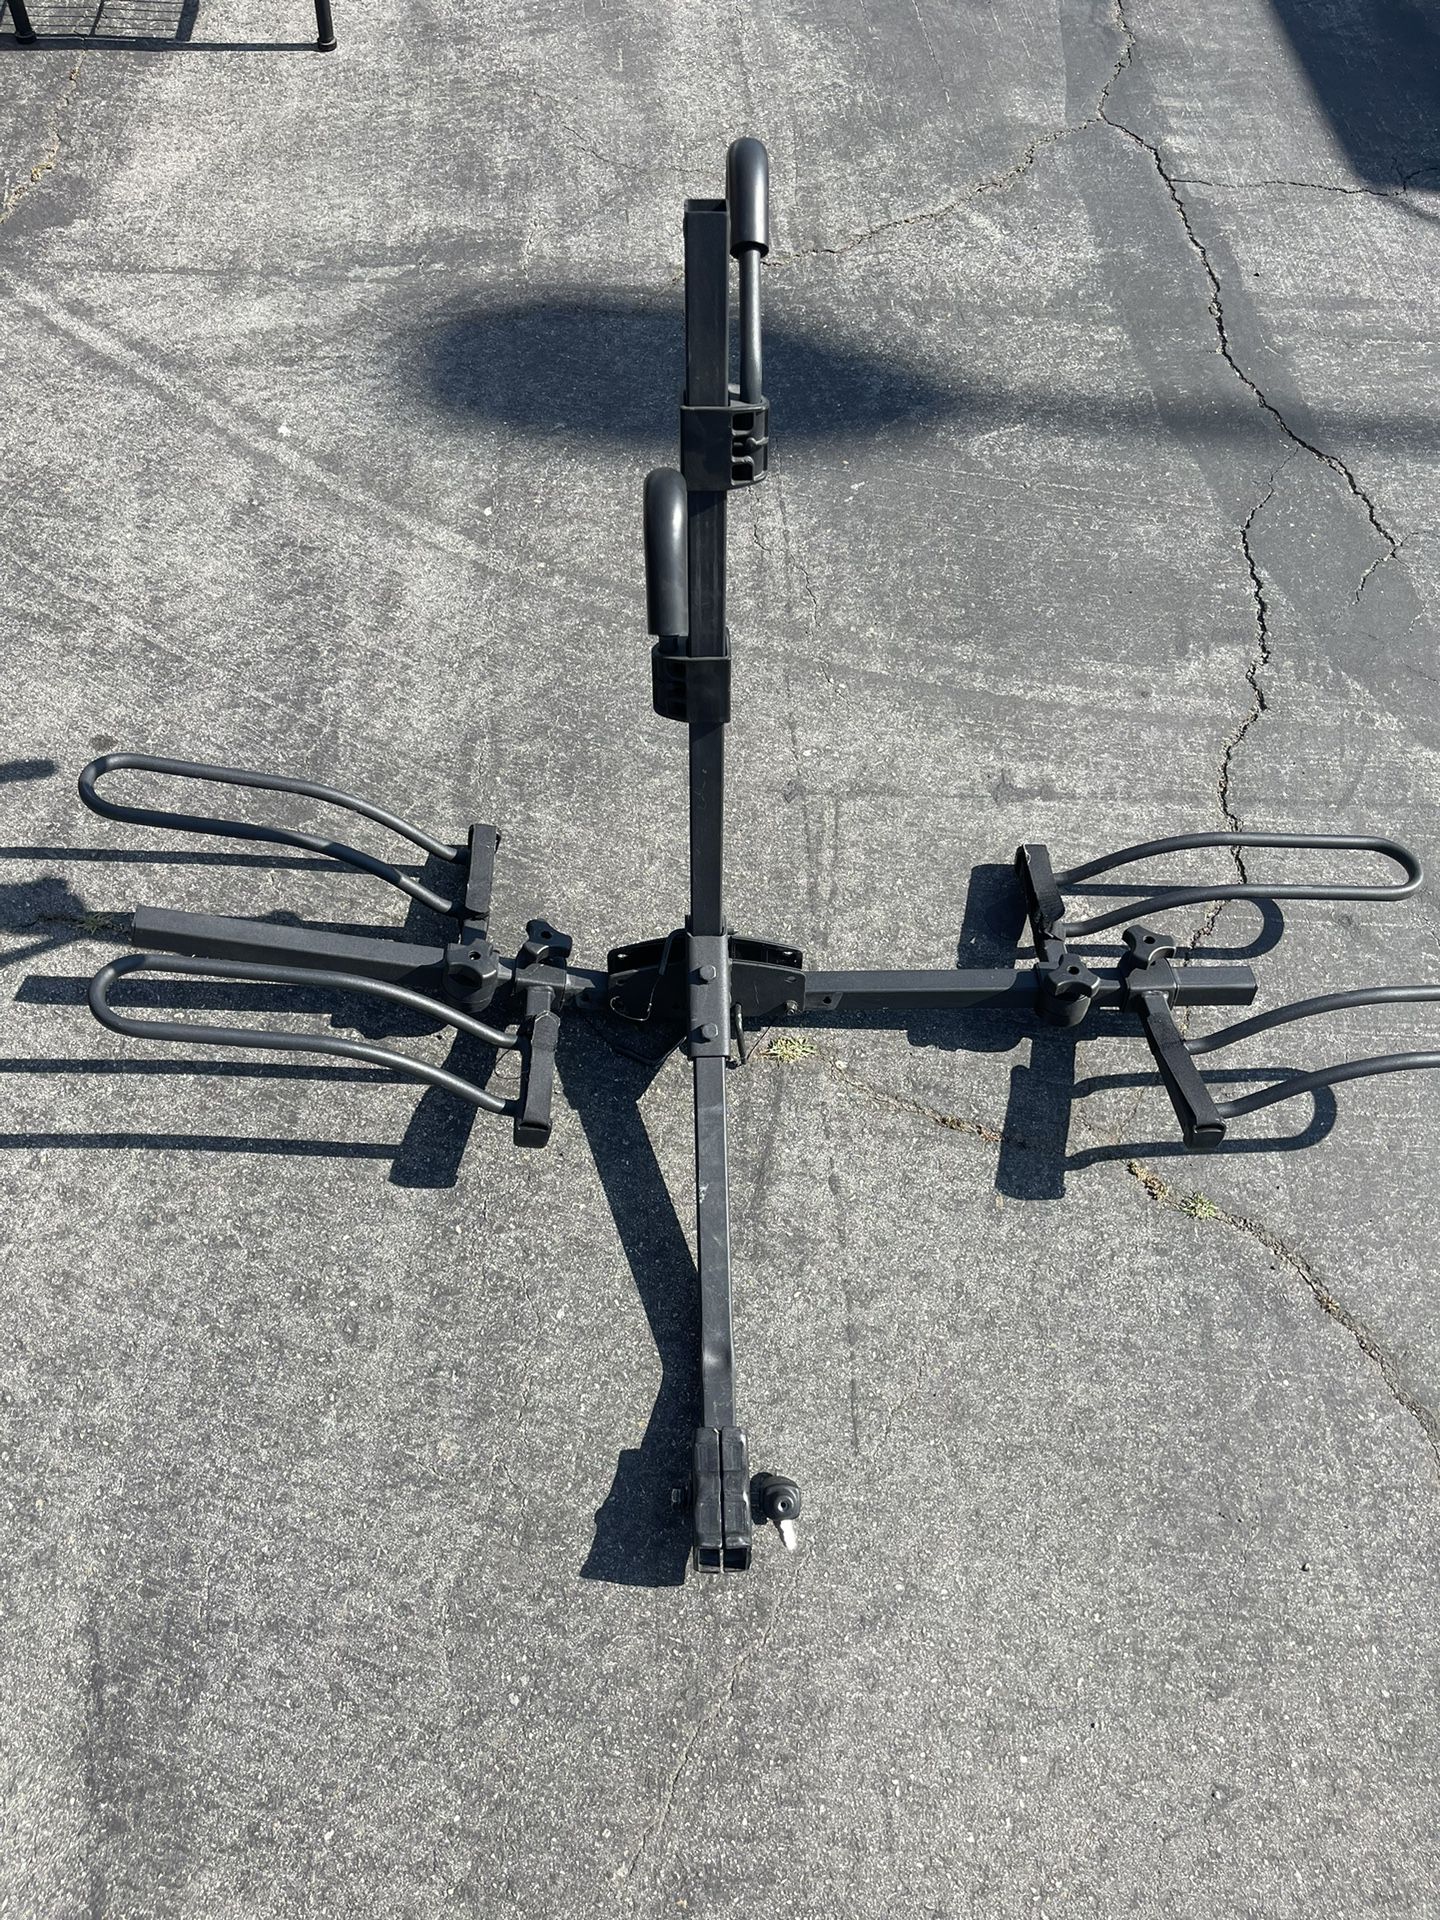 Two bike rack